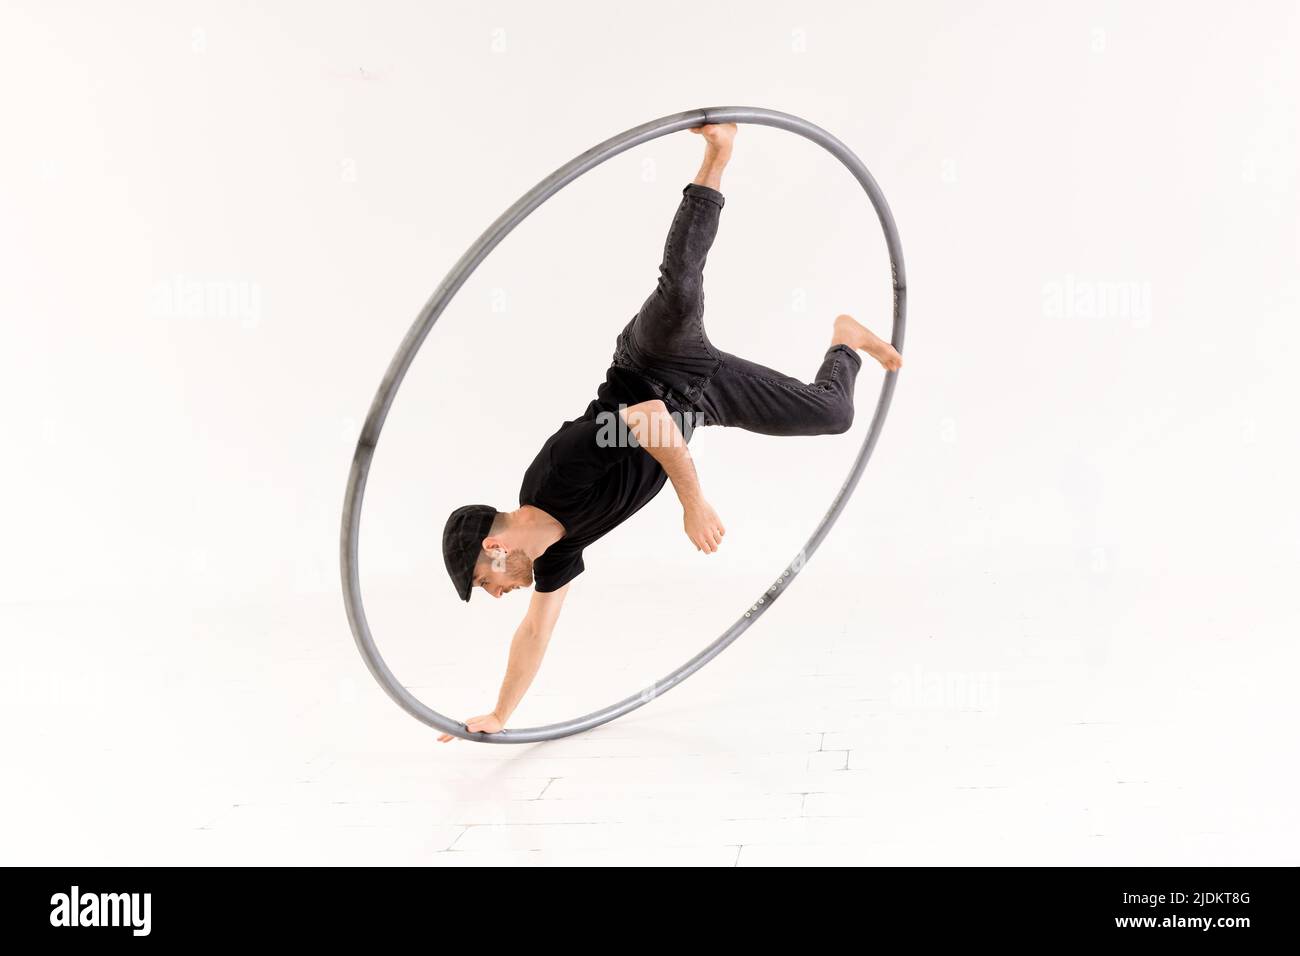 Ganzer Körper des aktiven Barfuß-akrobaten, der einen Arm Münzstunt mit cyr-Rad vor weißem Hintergrund im hellen Studio durchführt Stockfoto